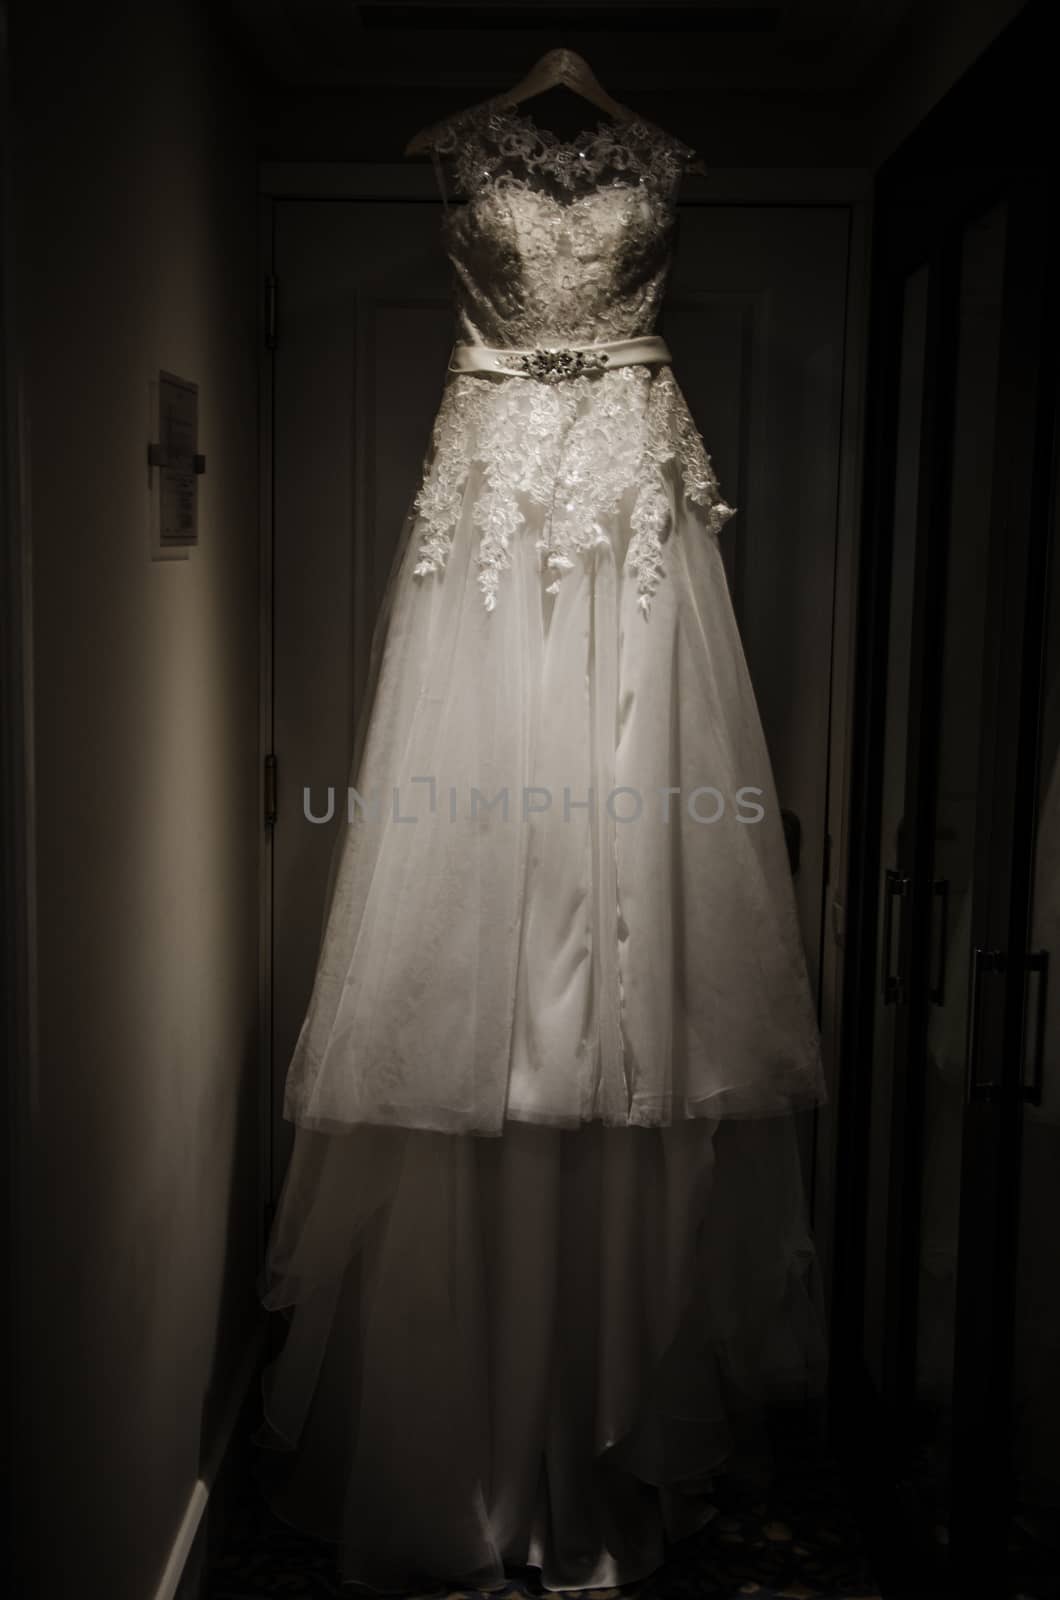 Wedding dress by Peruphotoart